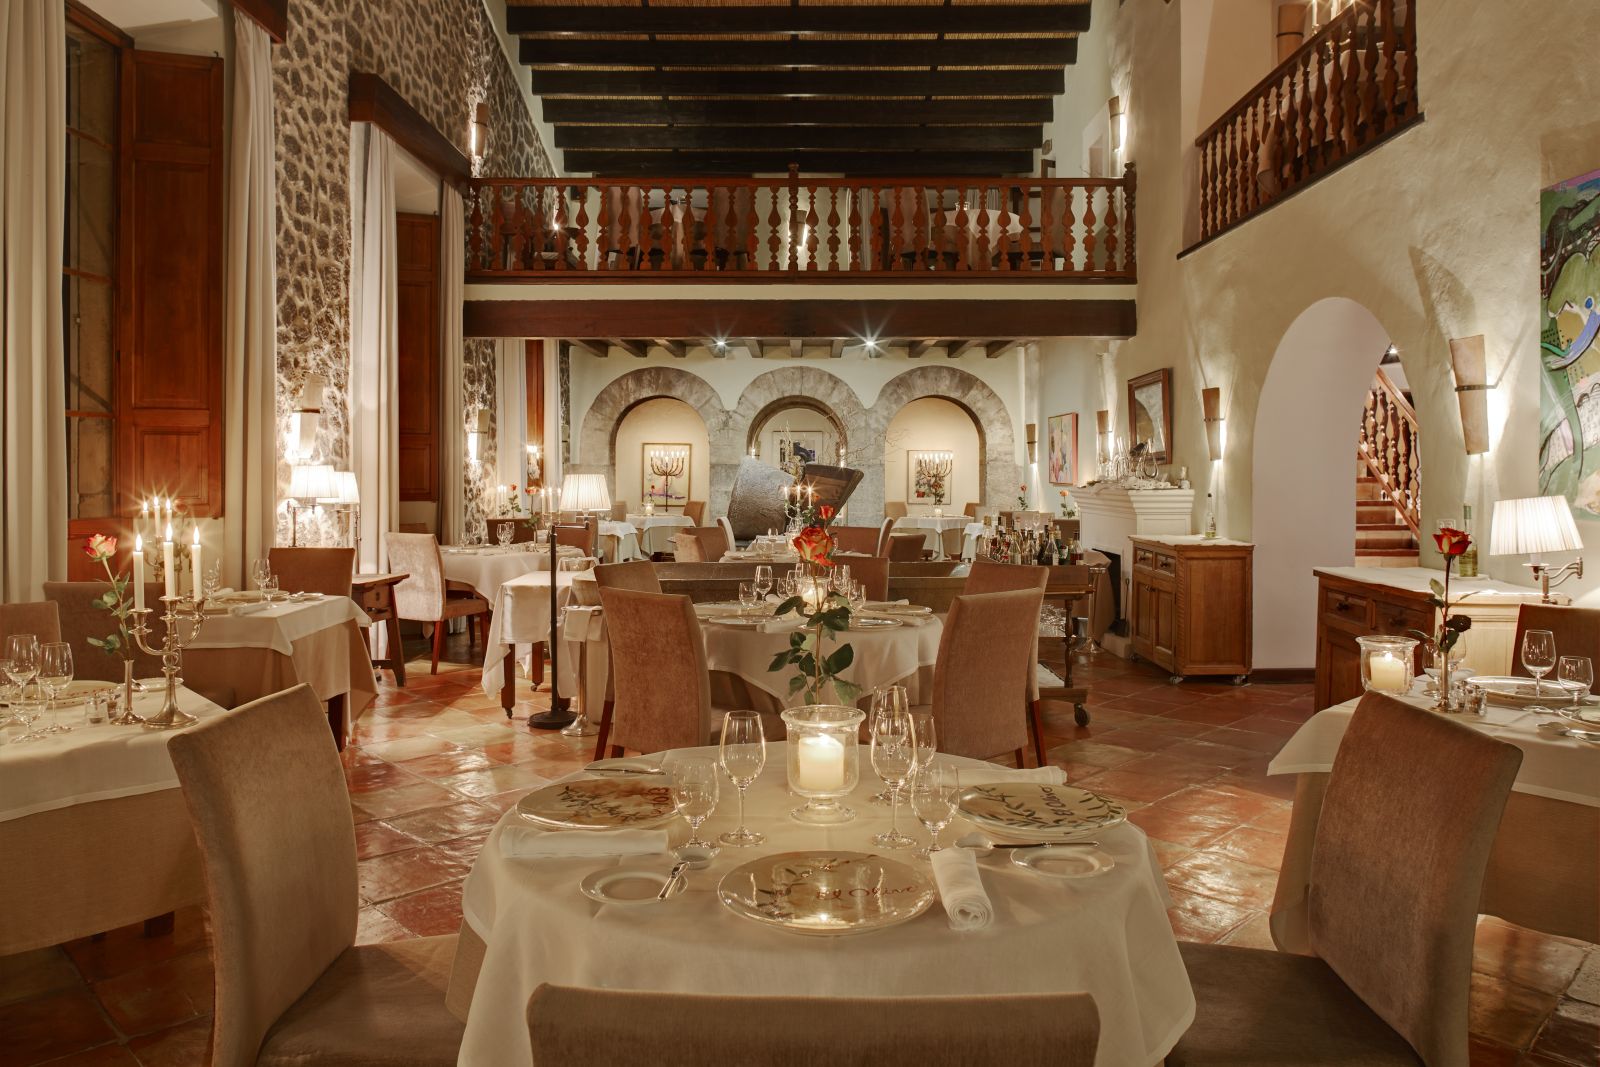 The restaurant at Belmond La Residencia hotel in Mallorca